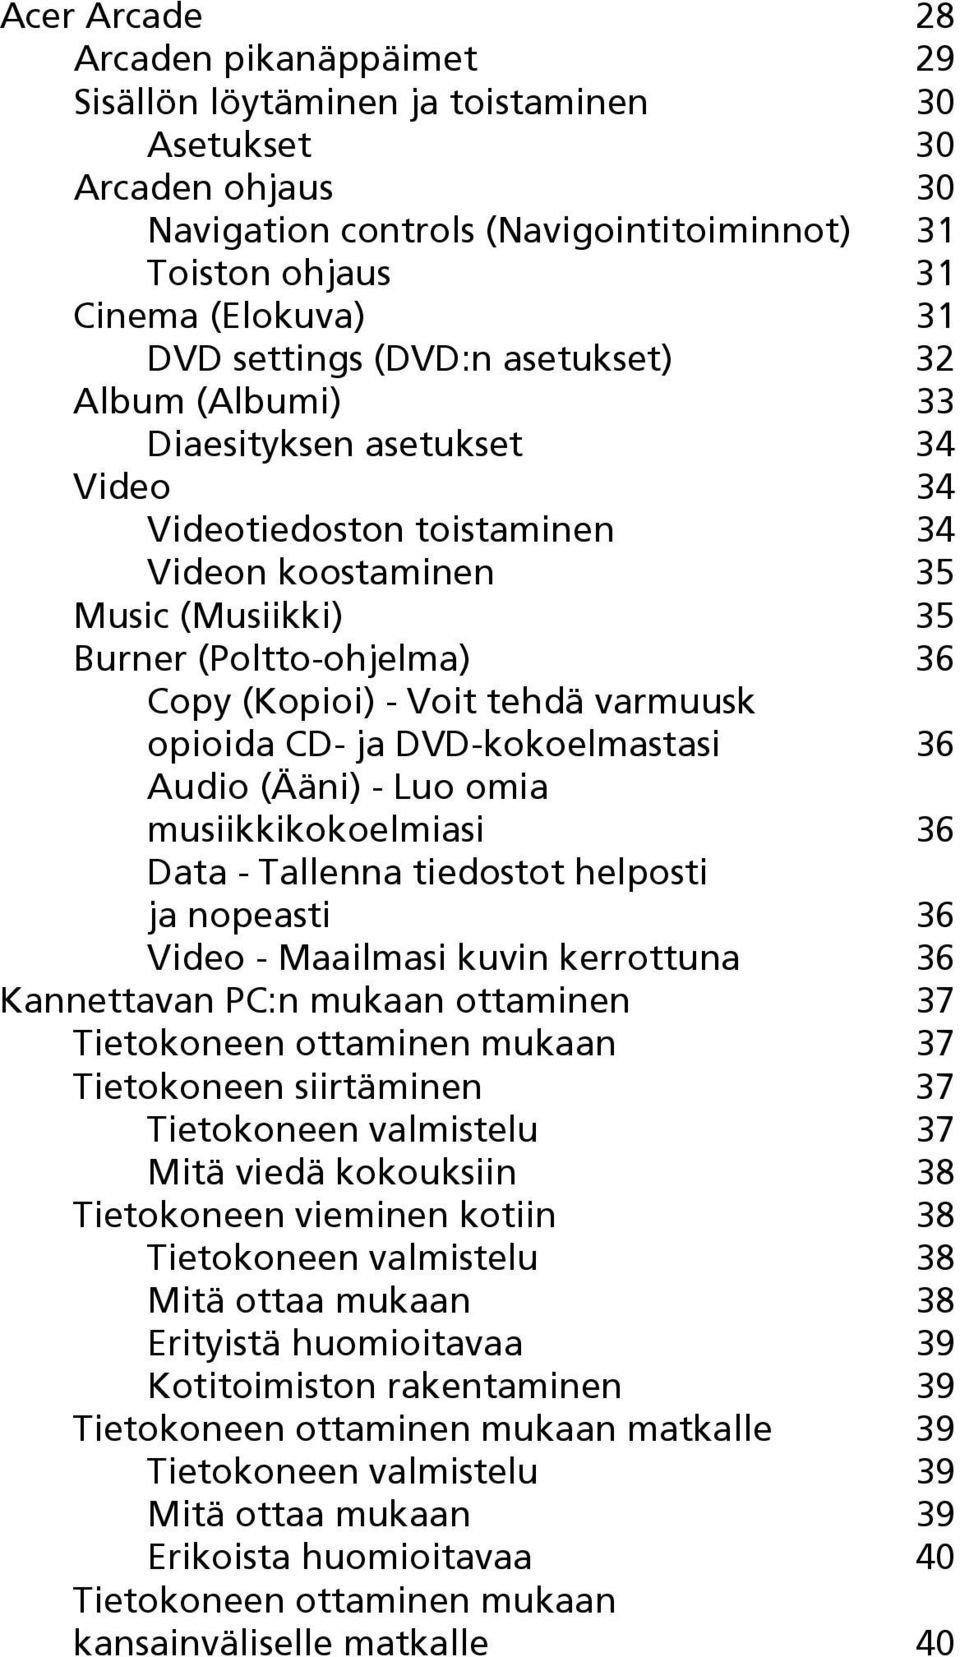 Voit tehdä varmuusk opioida CD- ja DVD-kokoelmastasi 36 Audio (Ääni) - Luo omia musiikkikokoelmiasi 36 Data - Tallenna tiedostot helposti ja nopeasti 36 Video - Maailmasi kuvin kerrottuna 36